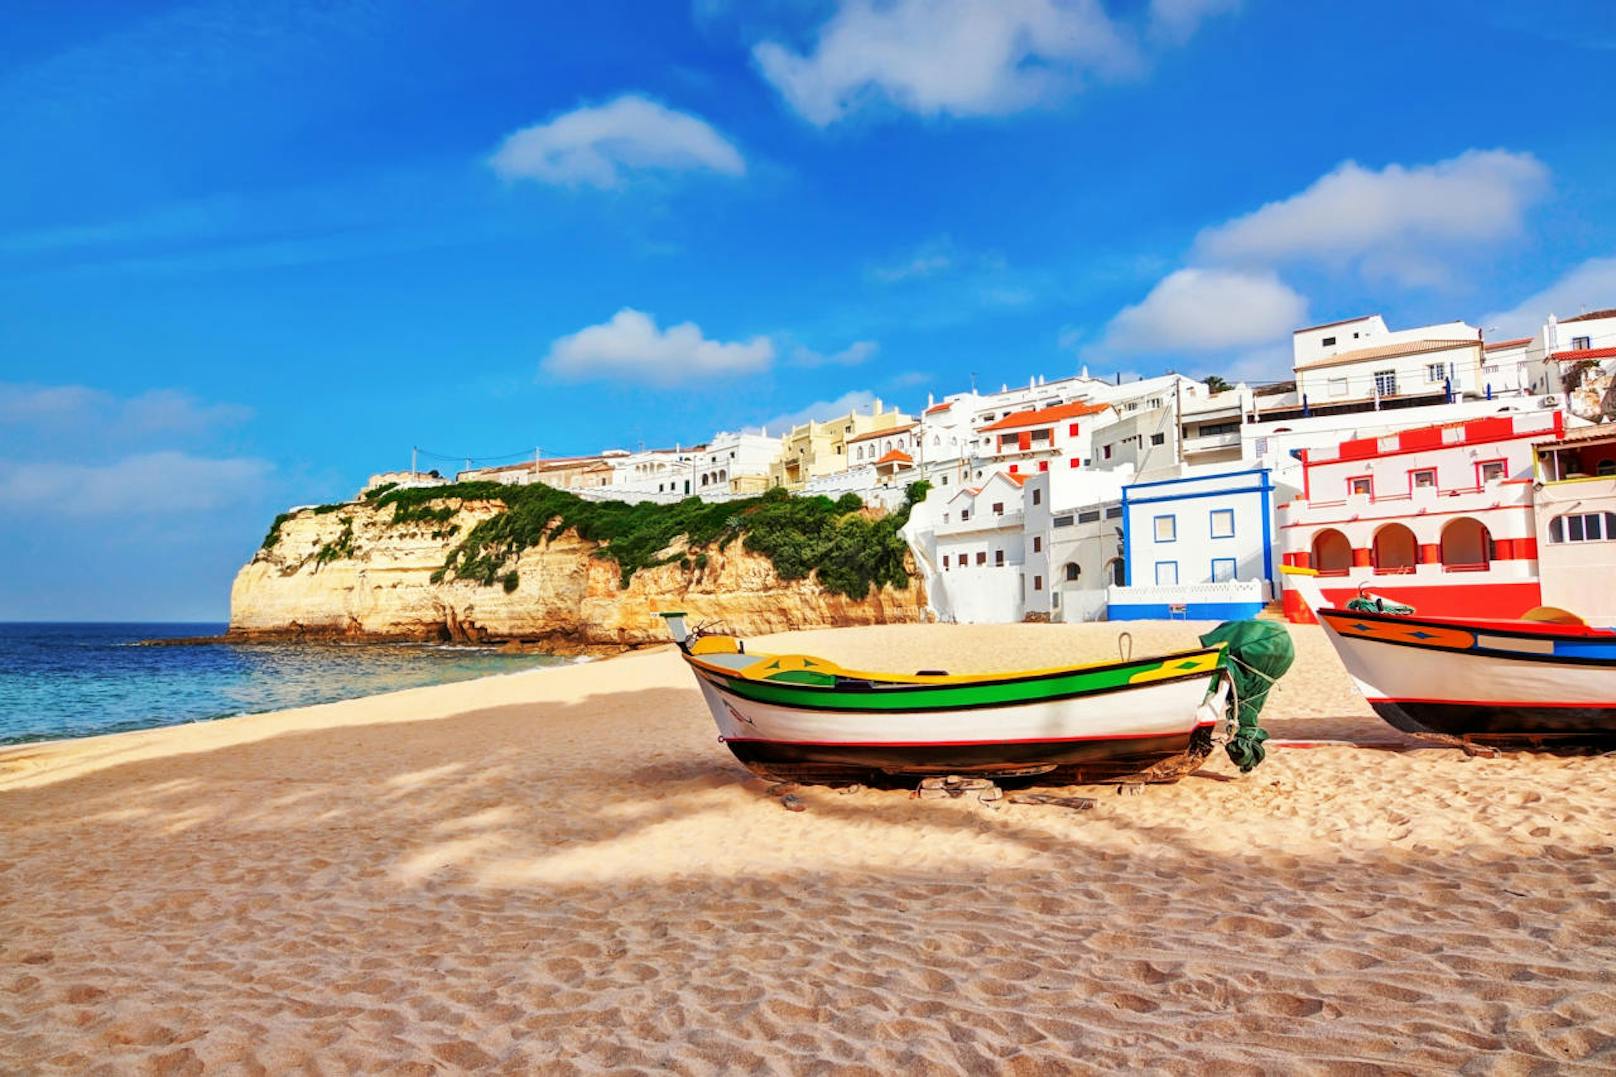 <b>Algarve, Portugal: </b>Wer dem Winterchaos entfliehen und einige Tage bei strahlendem Sonnenschein verbringen möchte, findet mit der Algarve-Küste ein nahegelegenes und preiswertes Urlaubsziel. In der südlichsten Region Portugals werden nämlich europaweit die meisten Sonnenstunden gezählt, sodass hier zu jeder Jahreszeit wahre Frühlingsgefühle geweckt werden.